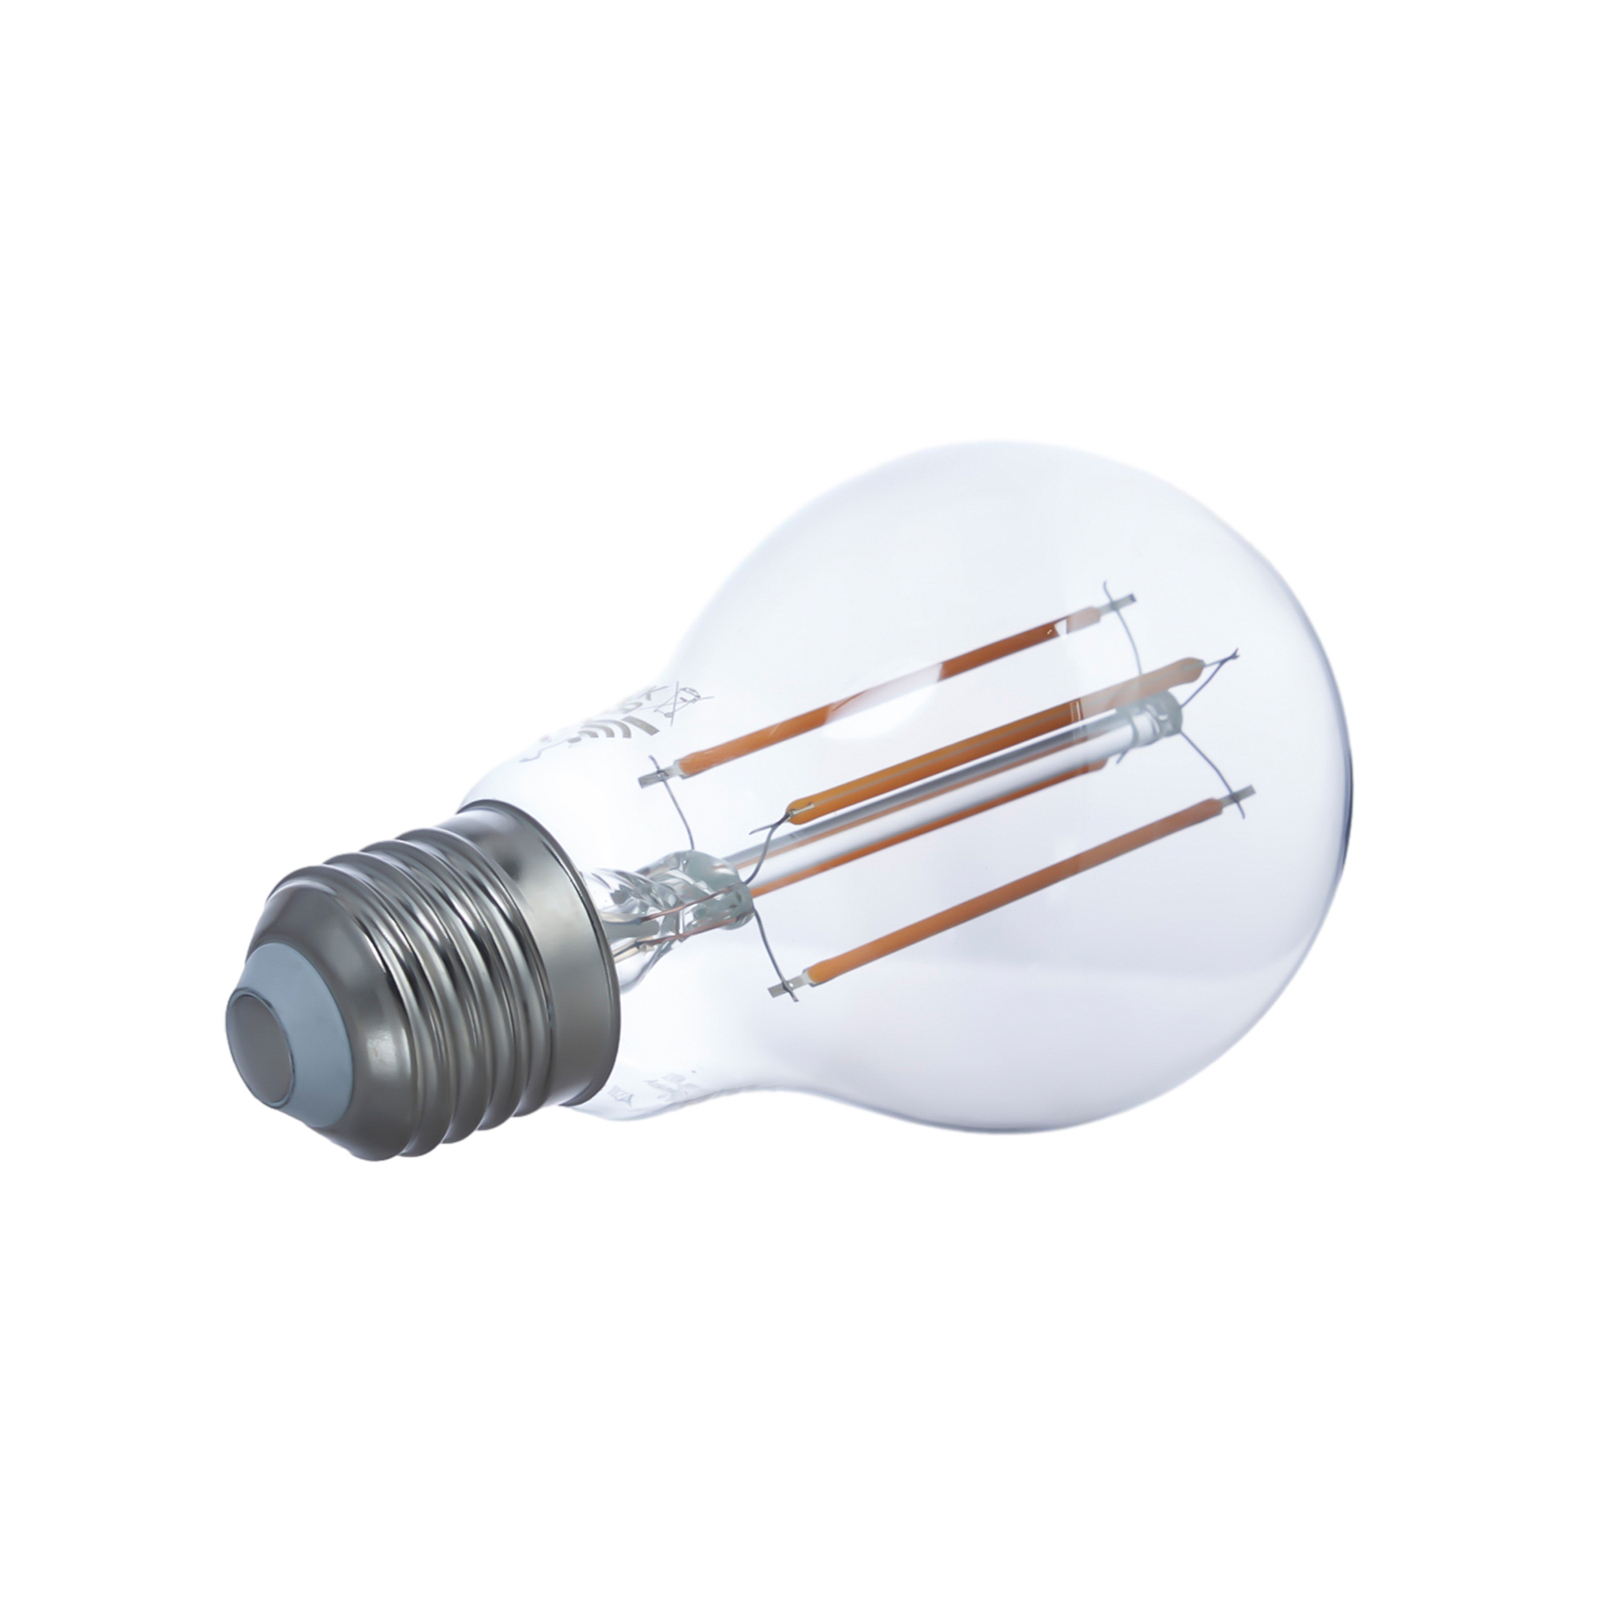 LUUMR Smart LED hehkulanka, 3-osainen, harmaa, E27, A60, 4.9W, Tuya